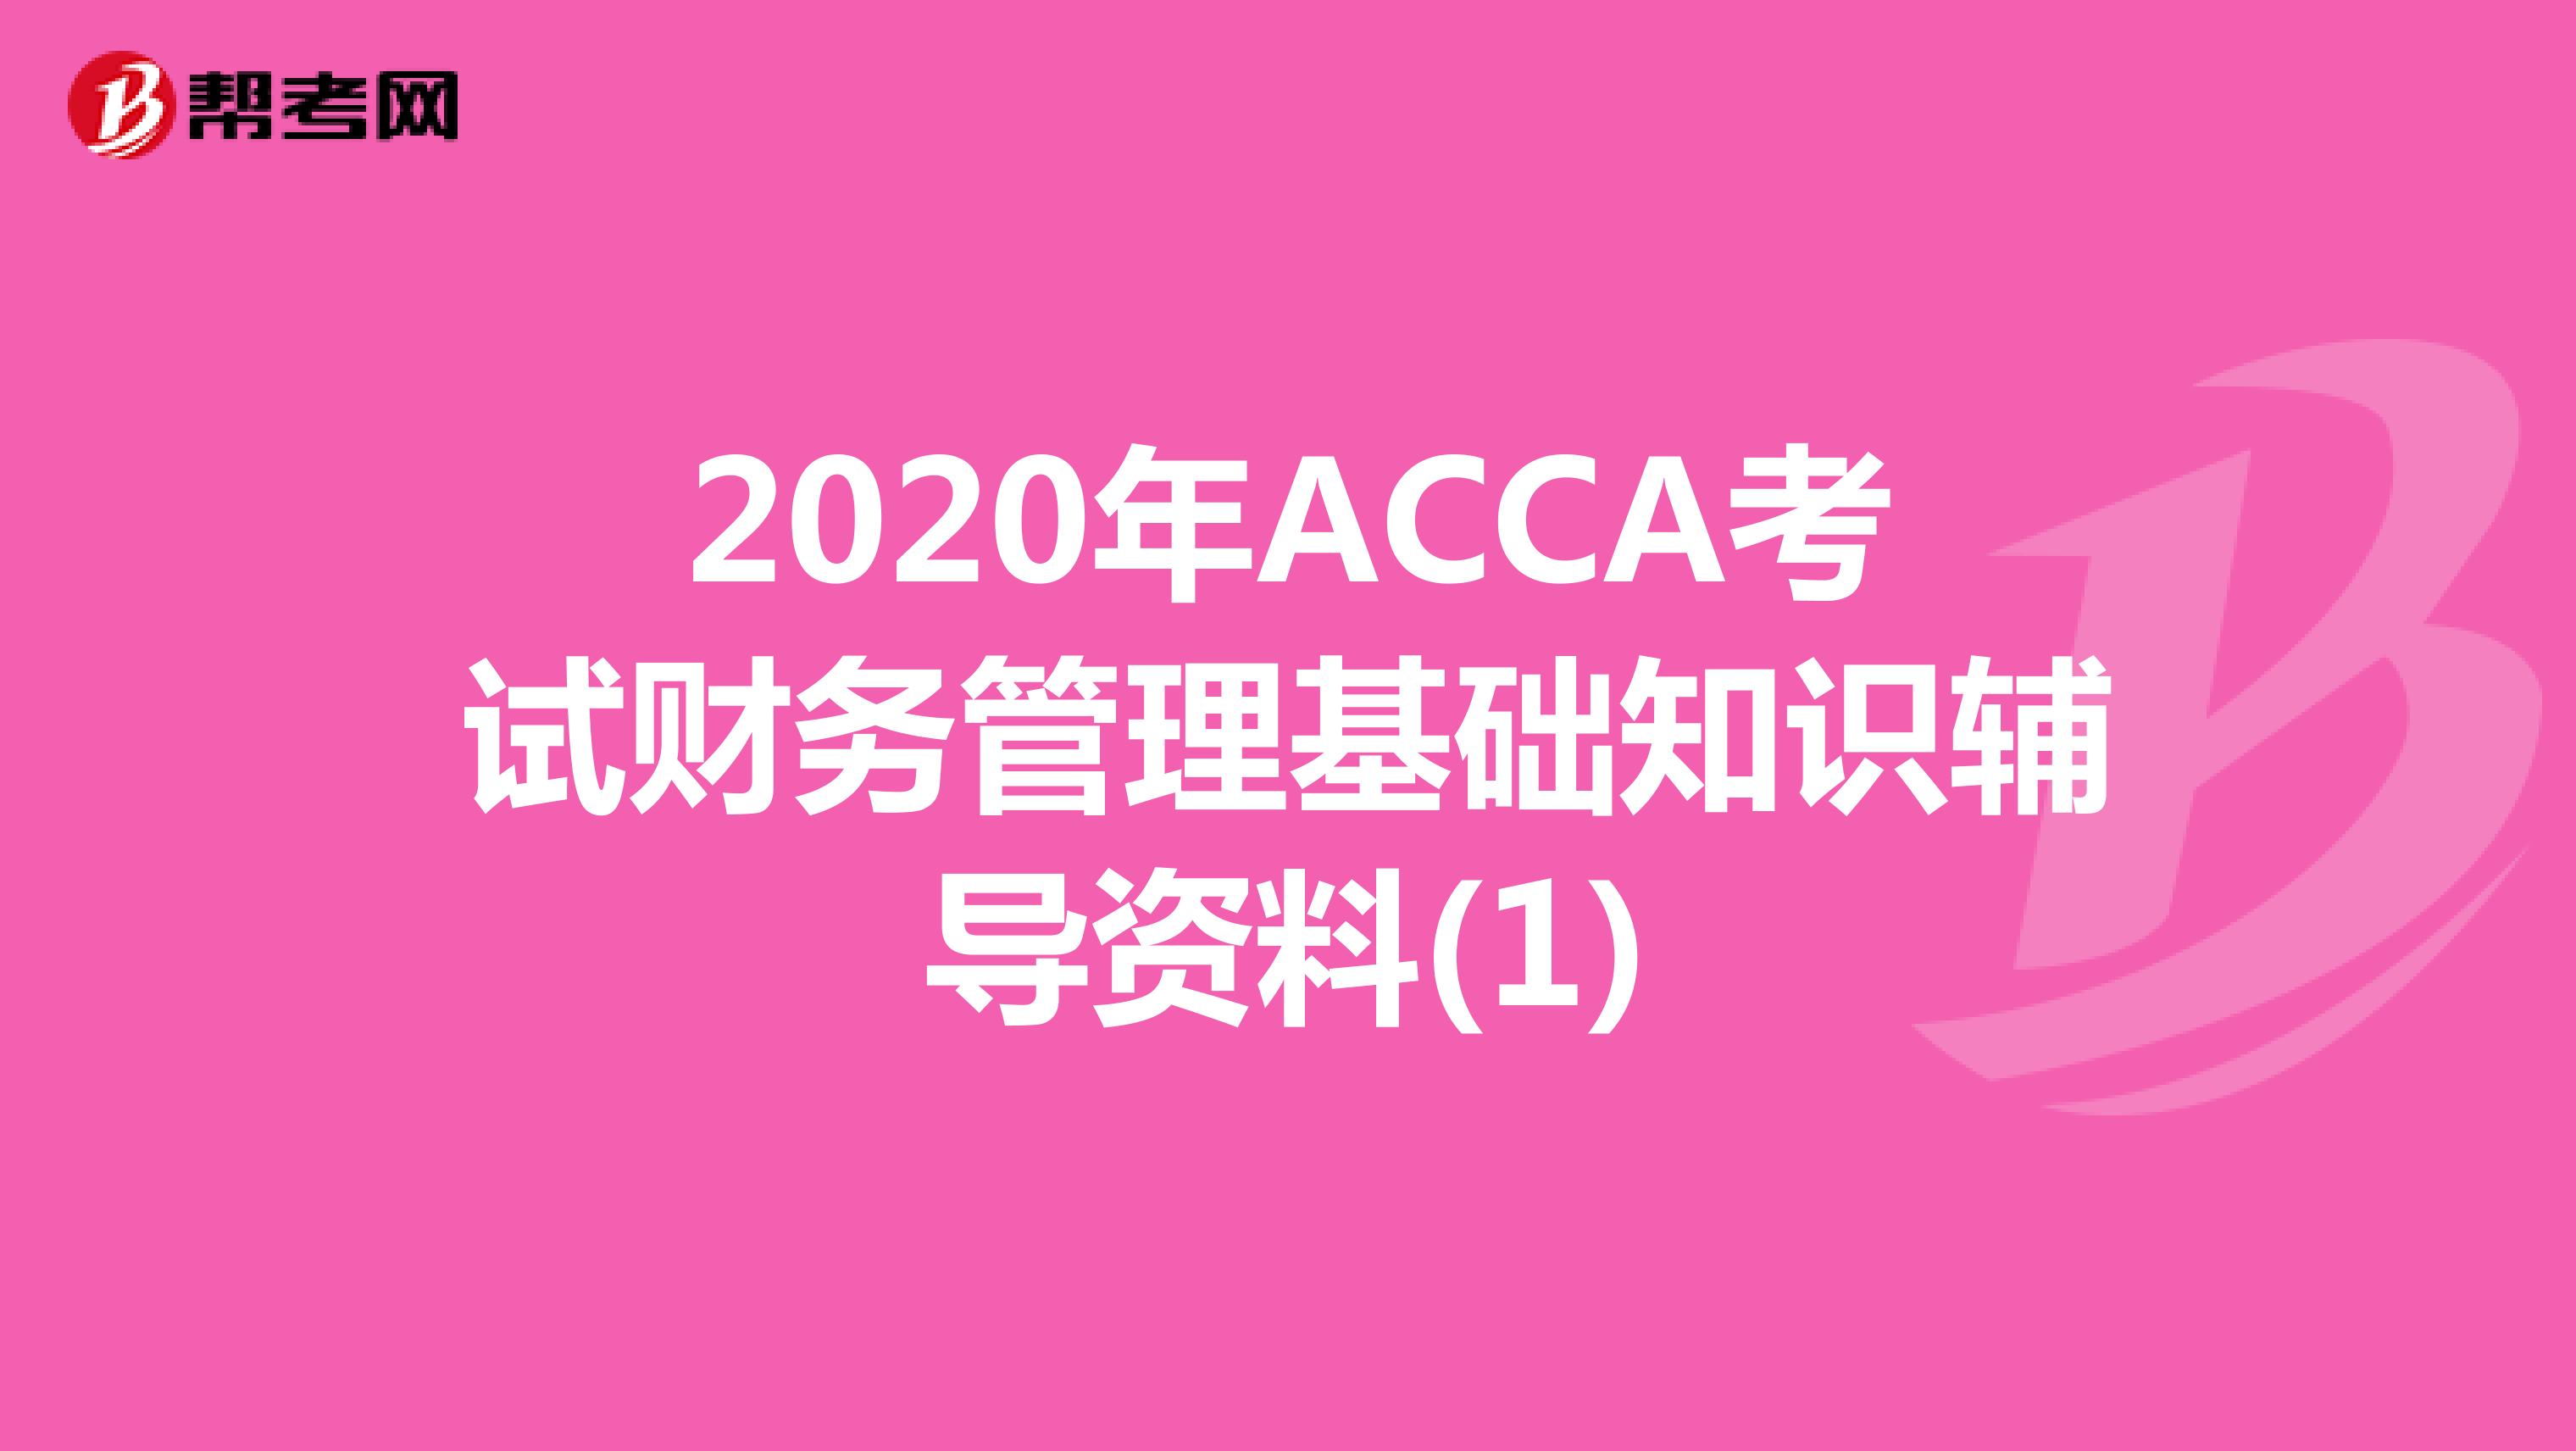 2020年ACCA考试财务管理基础知识辅导资料(1)